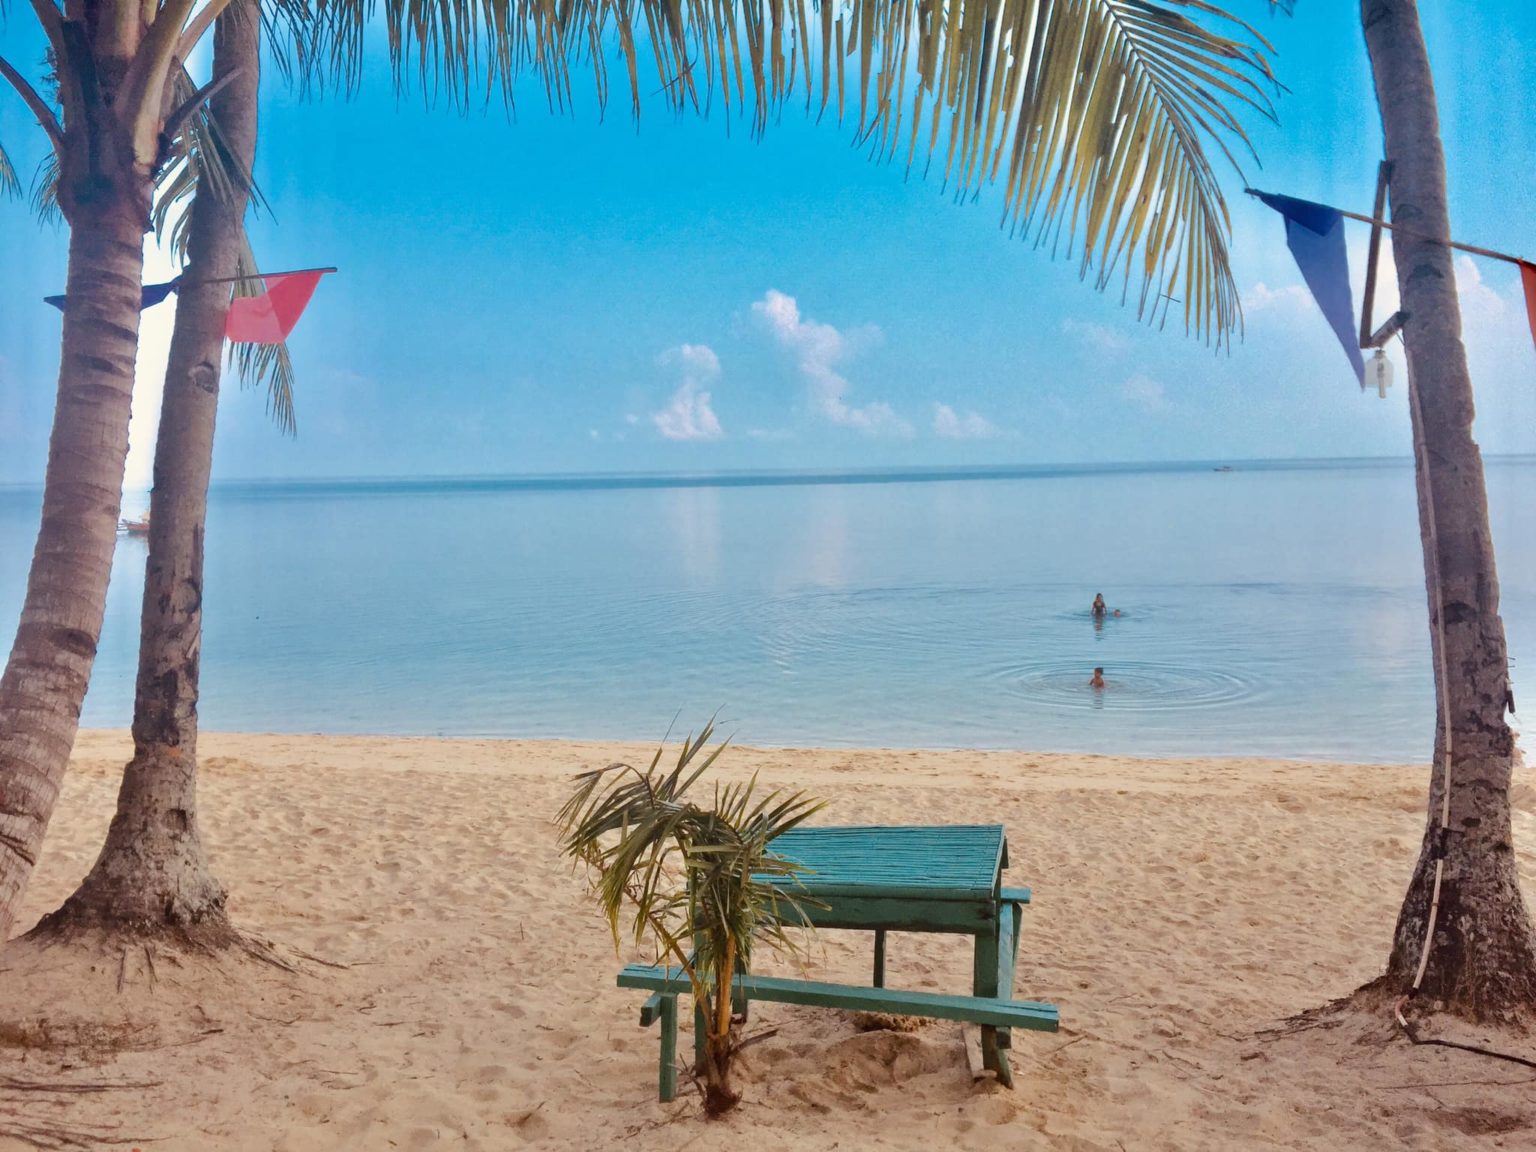 Hidden Beach Resort: Aloguinsan's famous budget beach getaway